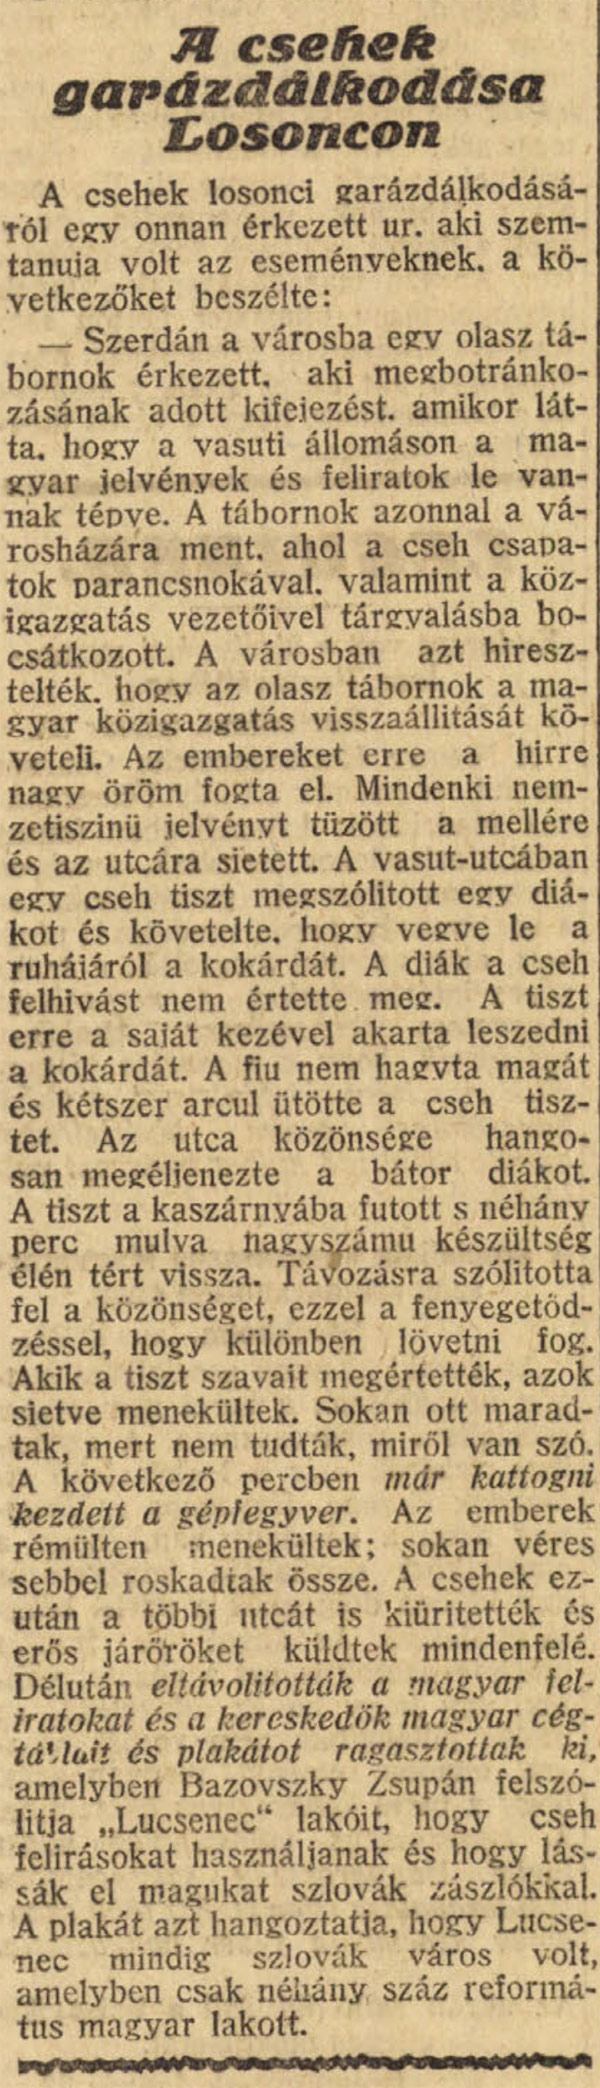 Nógrád vármegye 100 éve